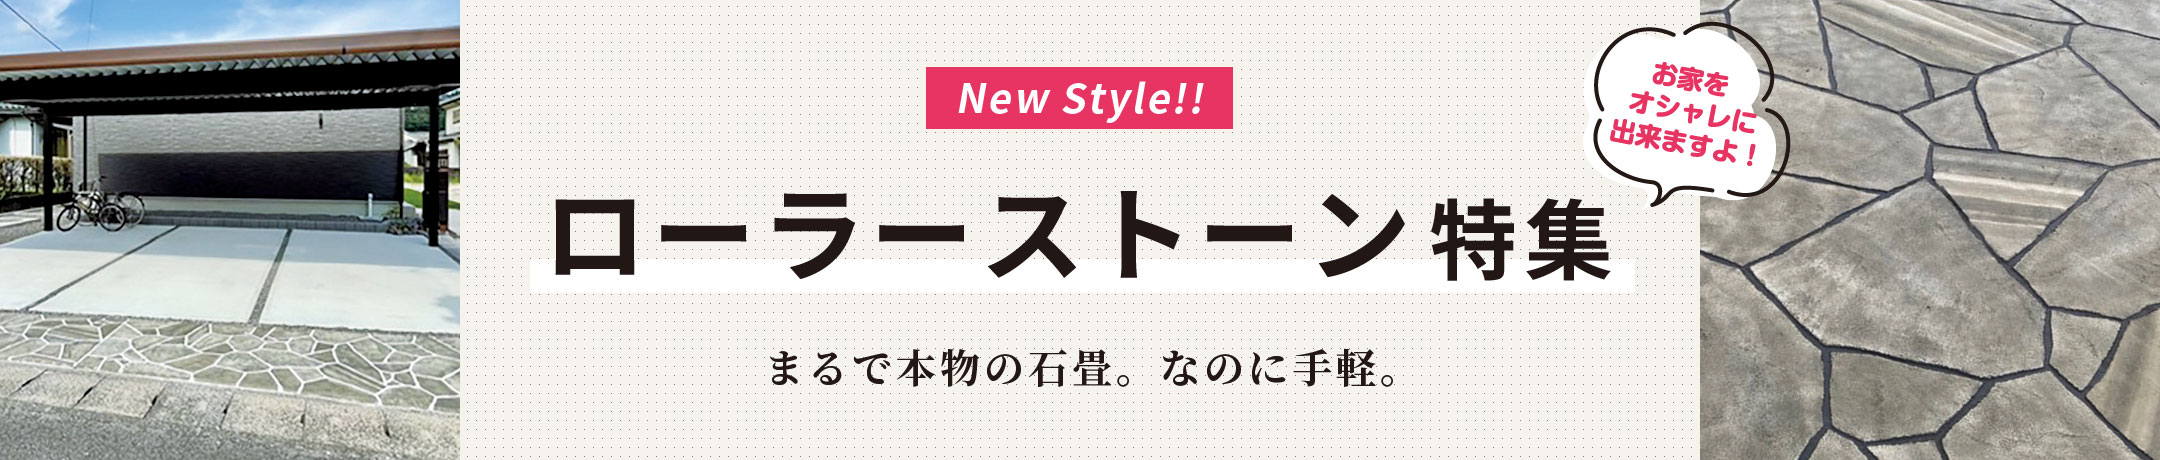 New Style!! ローラーストーン特集